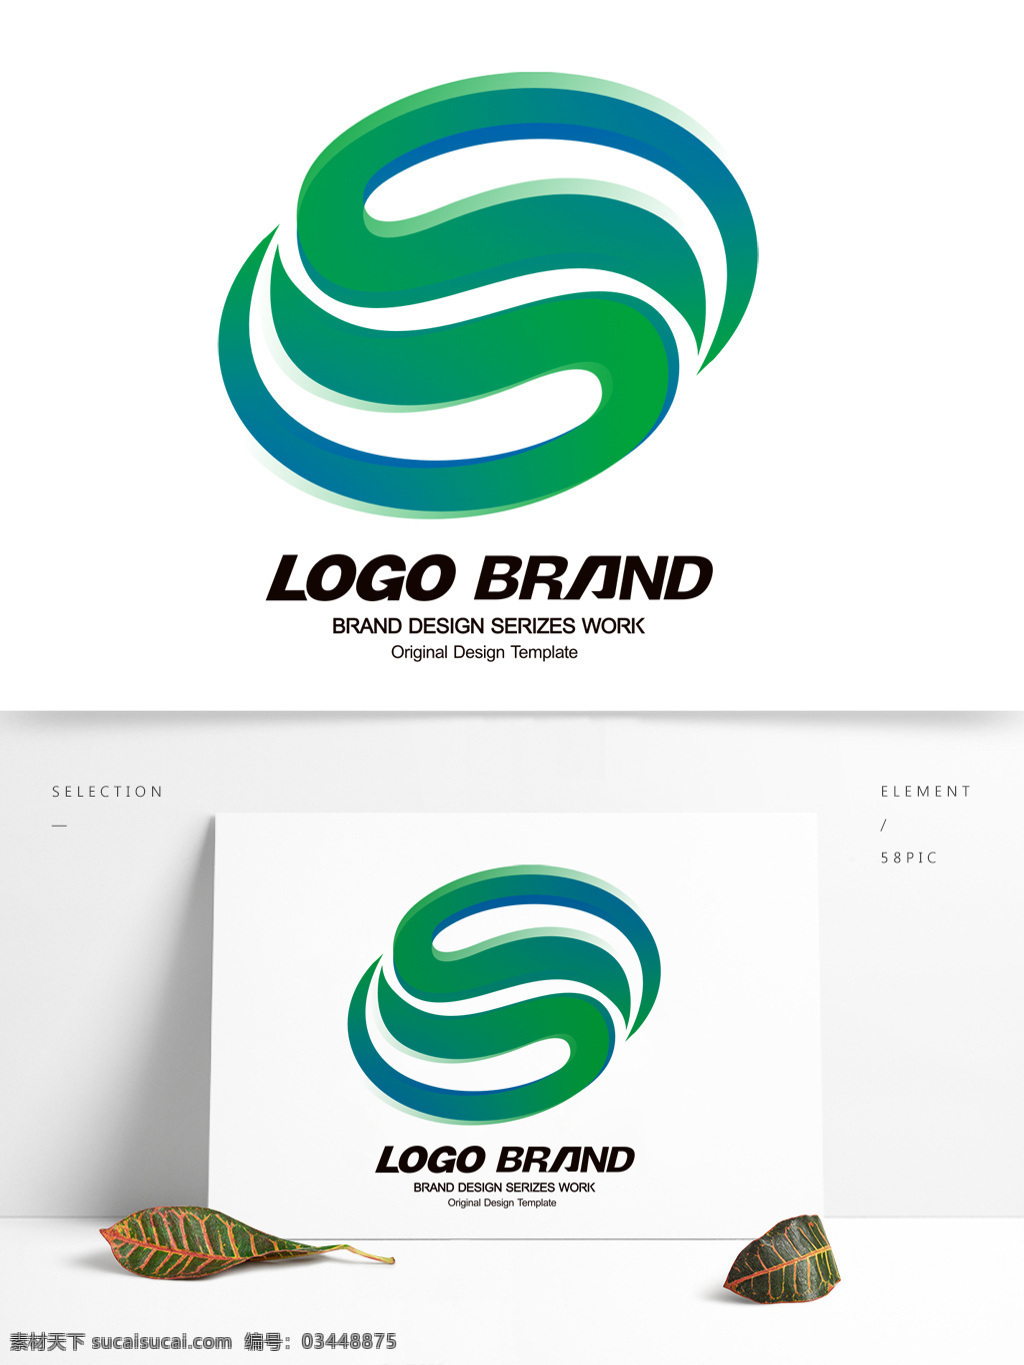 创意 大气 绿色 字母 s 公司 标志 logo 标志设计 c 公司标志设计 企业 会徽标志设计 企业标志设计